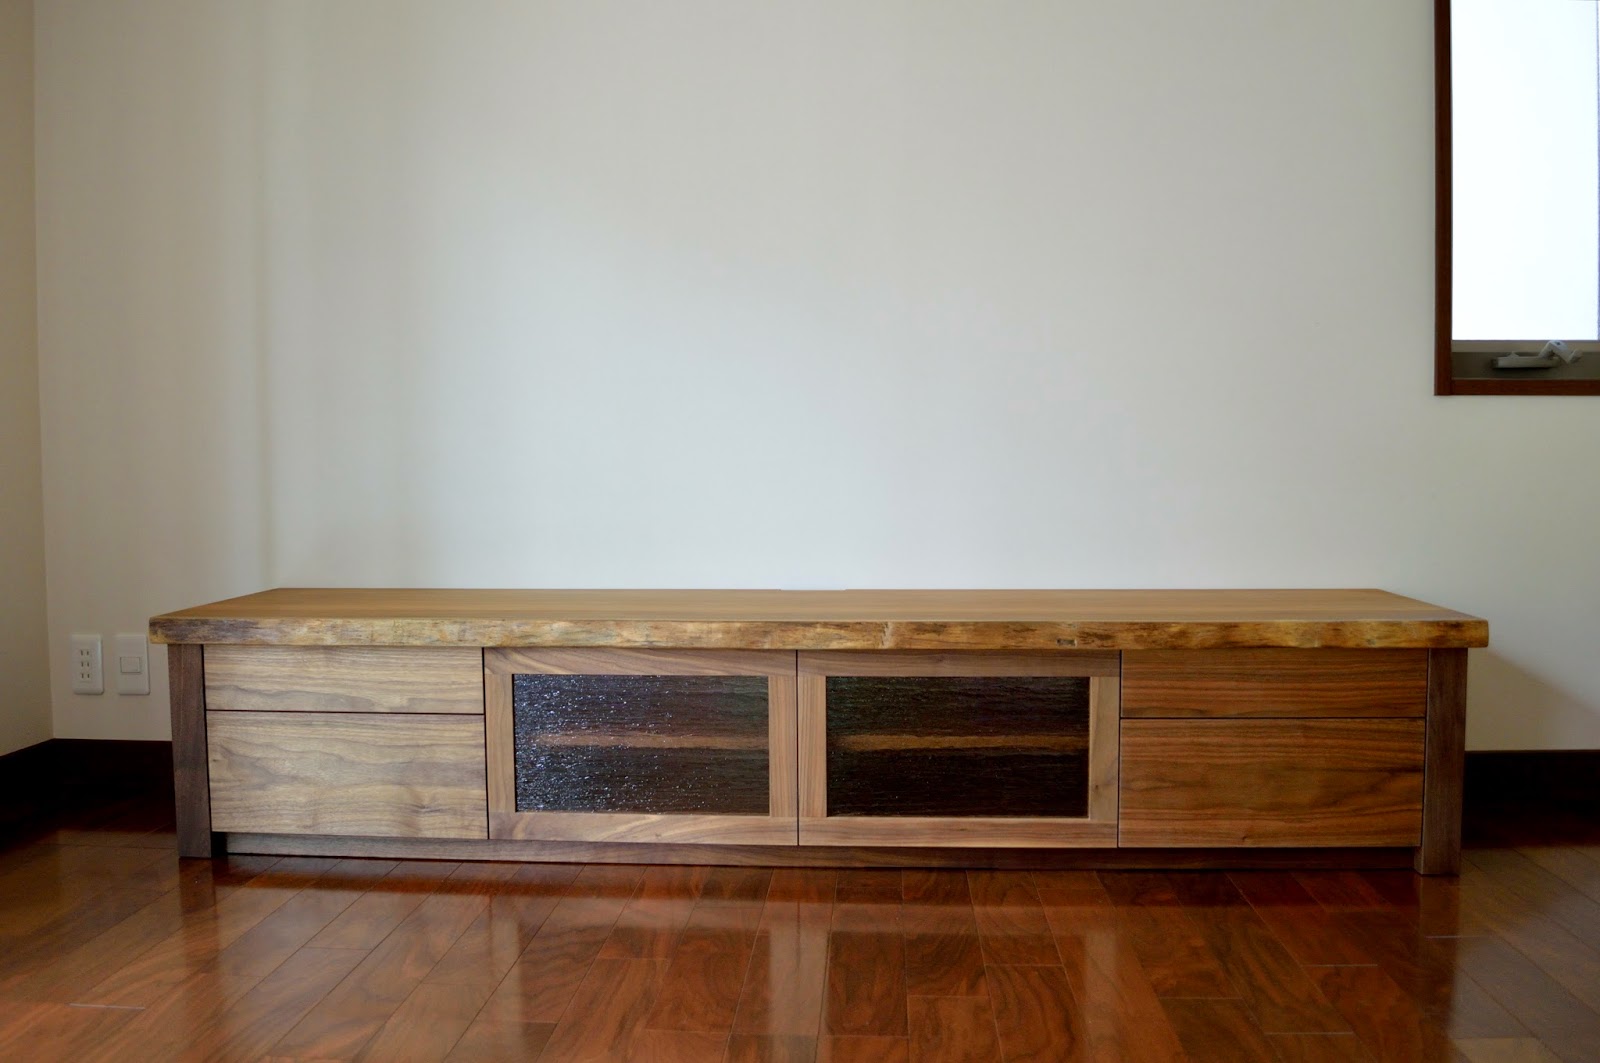 無垢材と一枚板にこだわった家具工房 神戸cachito furniture blog: アサメラ一枚板・ウォールナット無垢材 オーダーメイドの